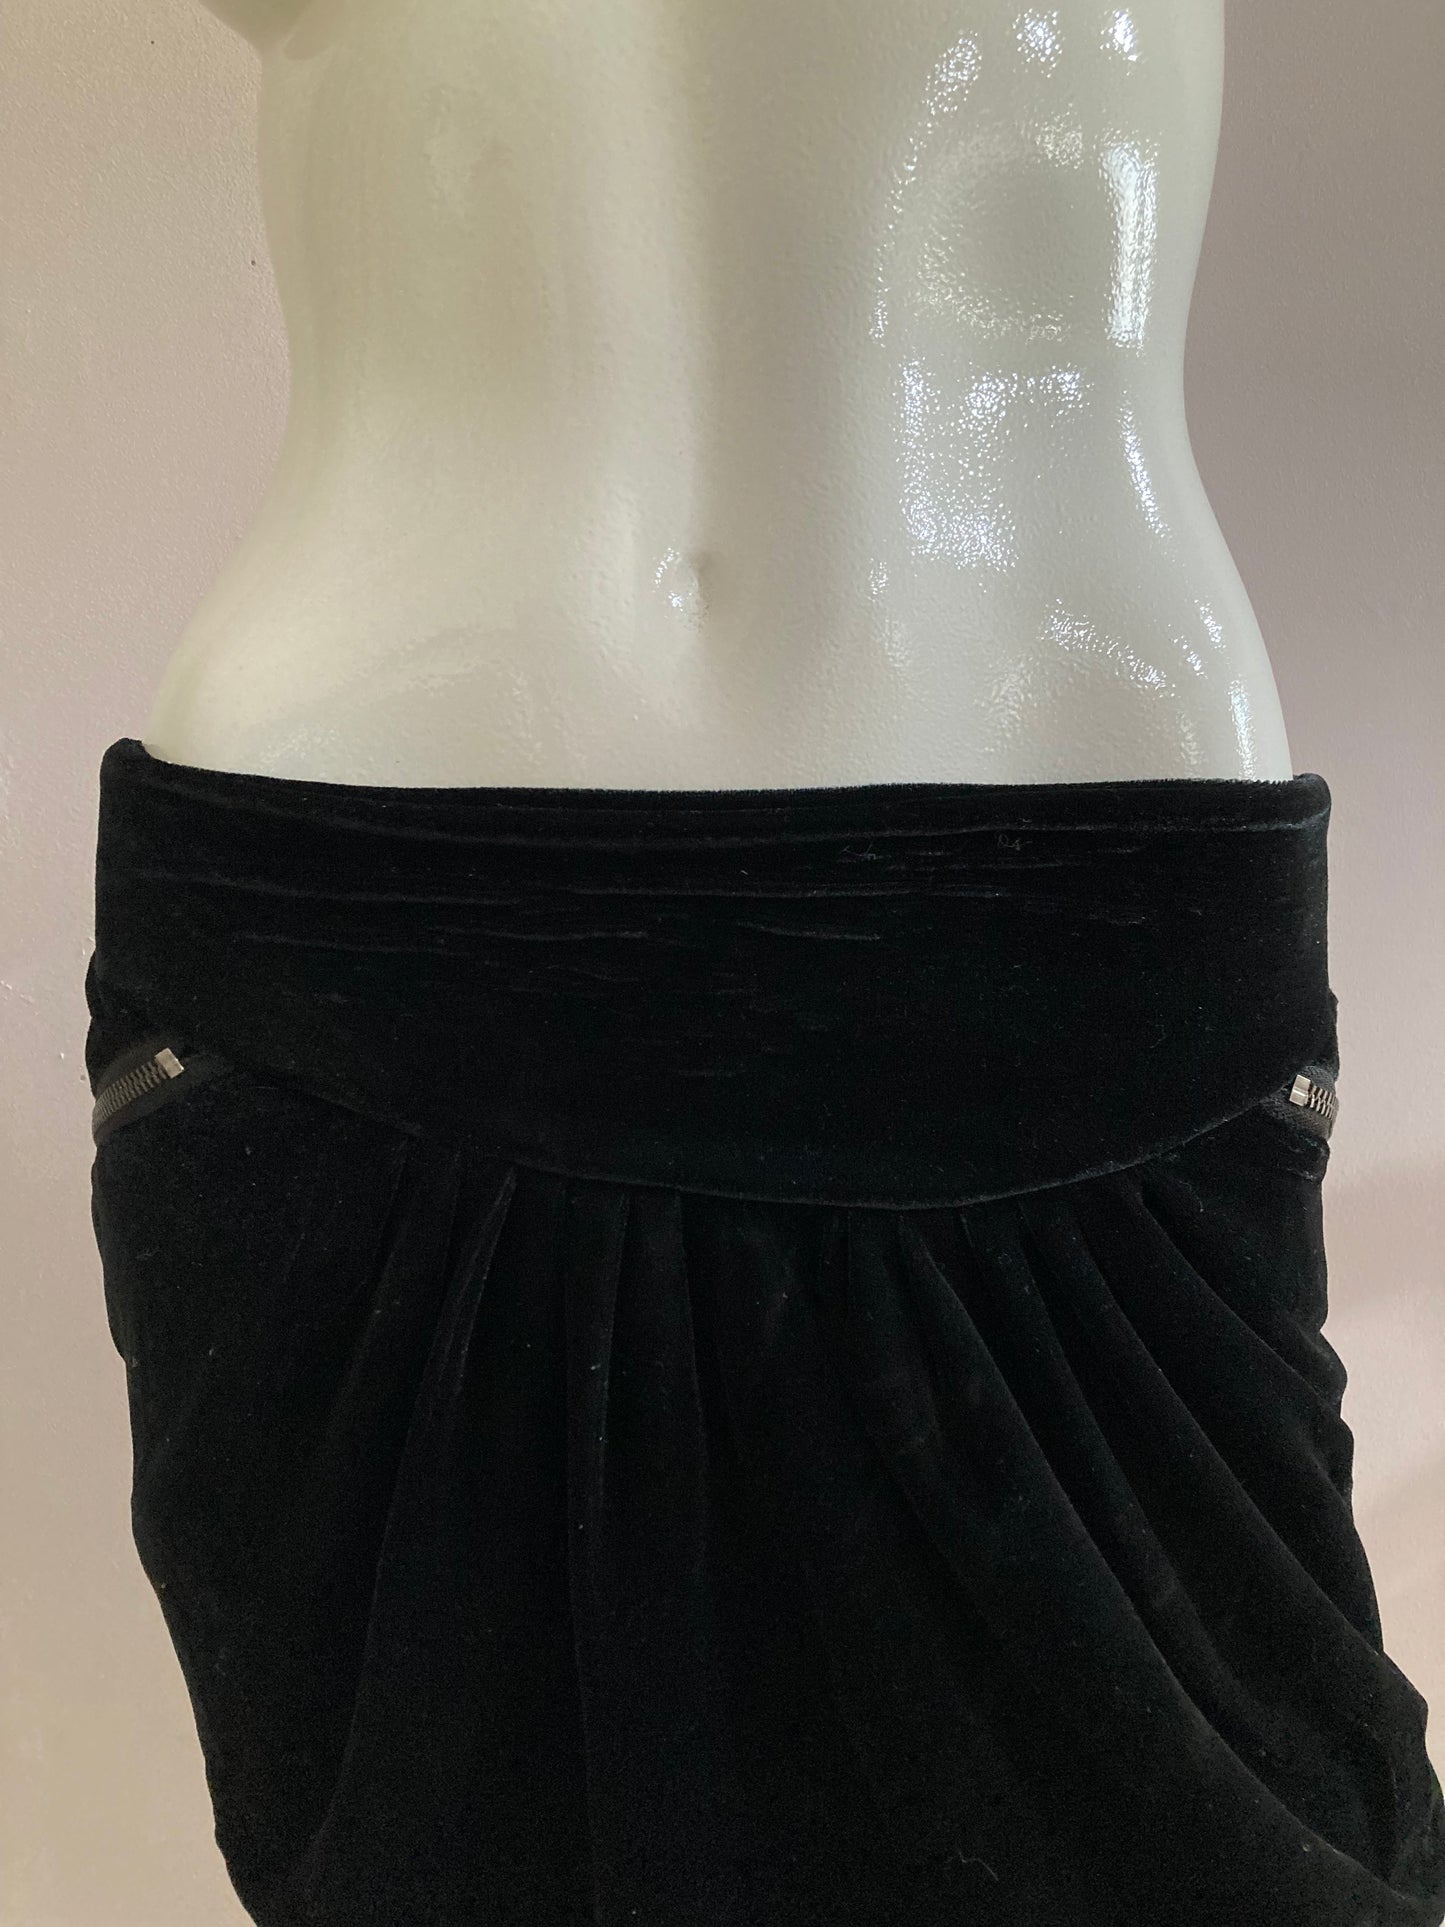 Black velvet mini skirt with pockets and lining